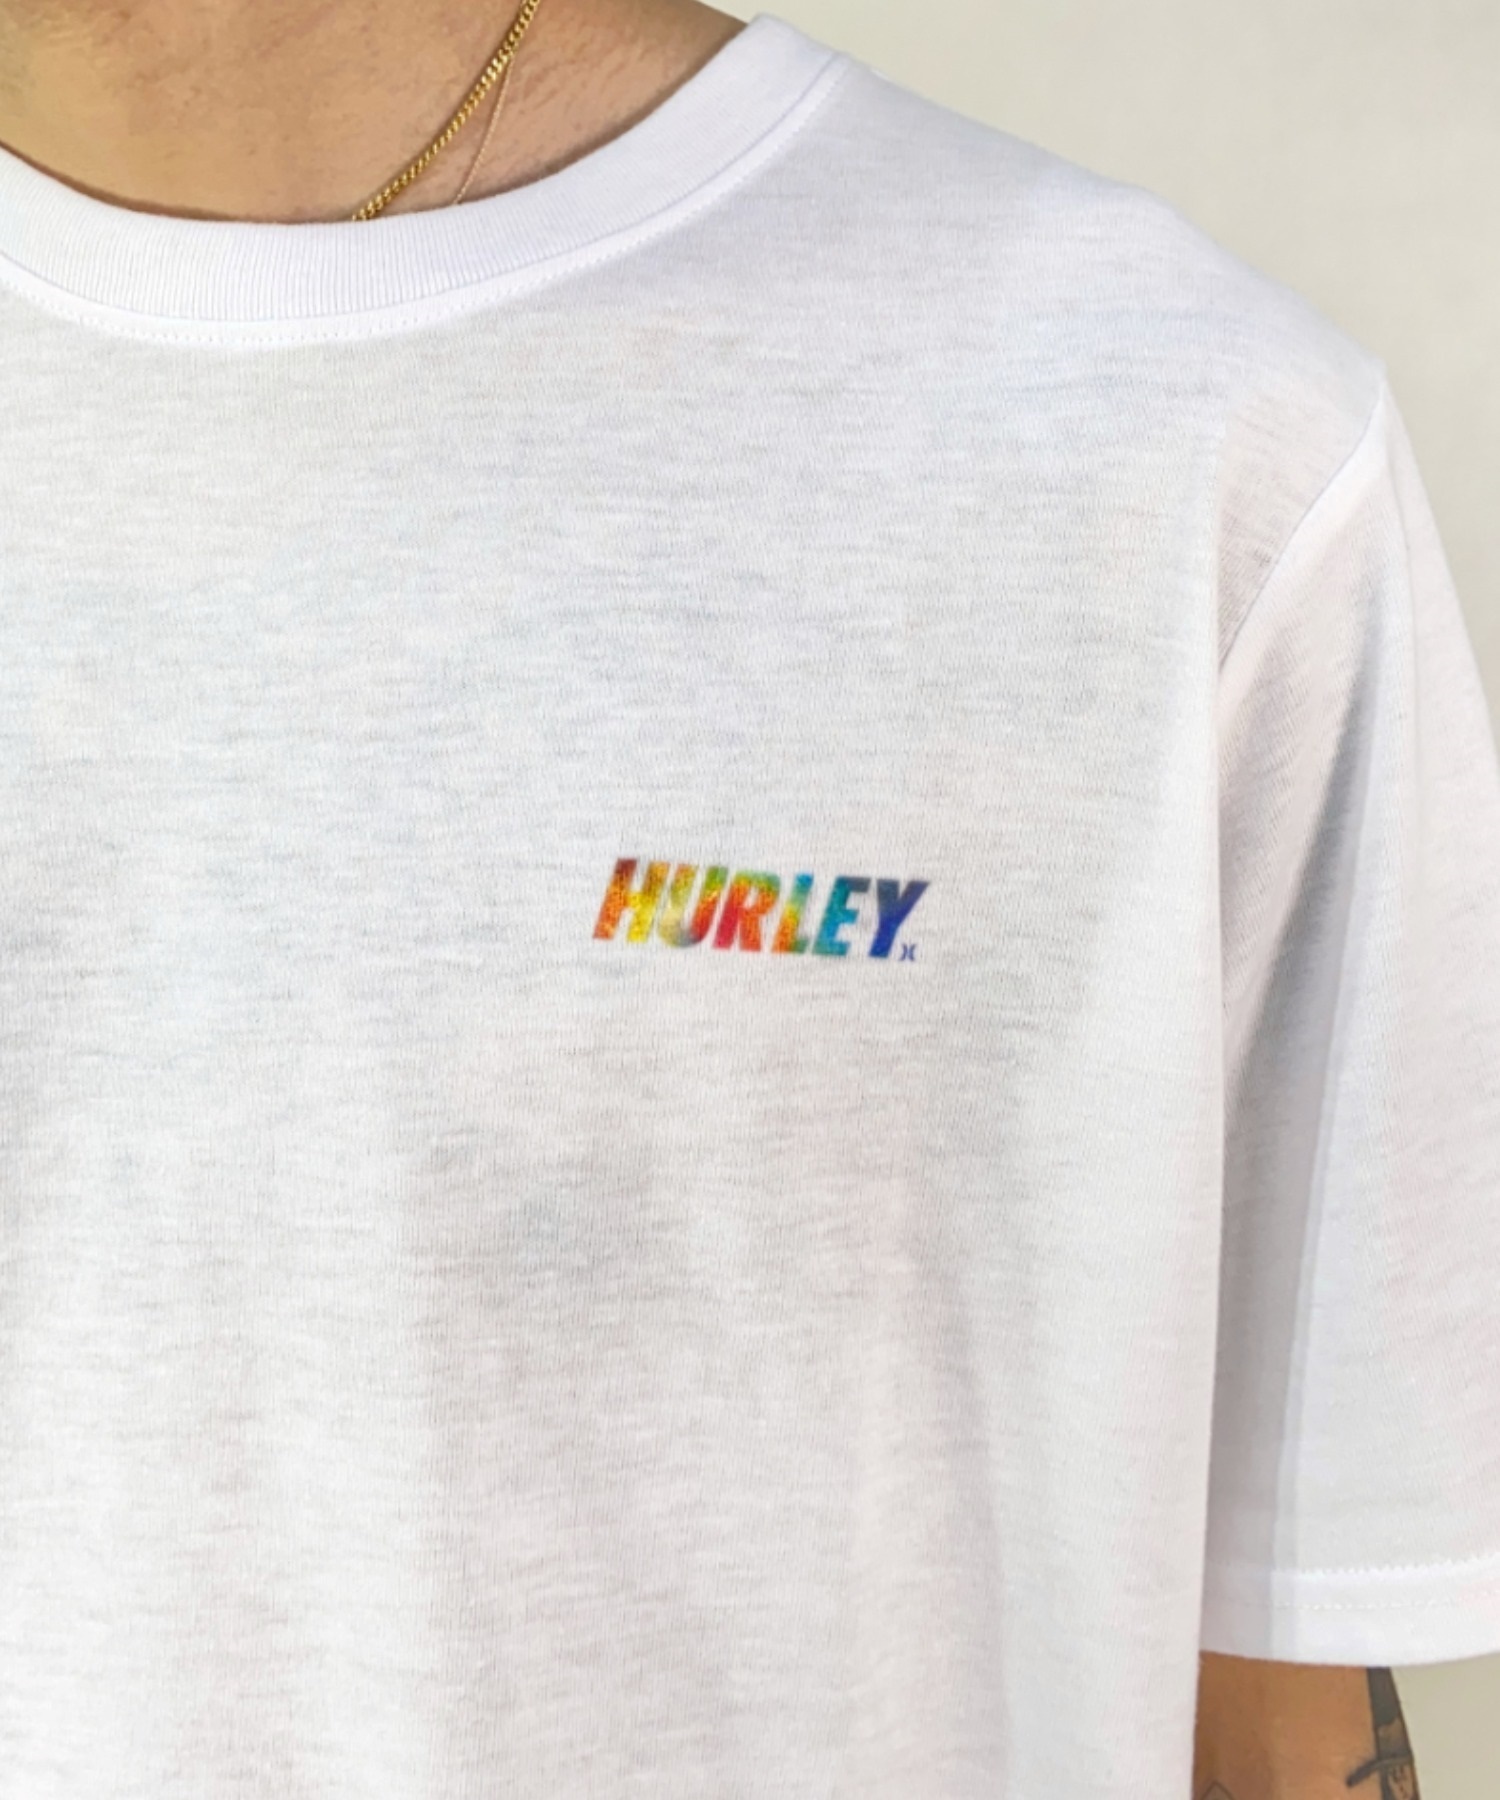 Hurley ハーレー MSS2200053 メンズ 半袖 Tシャツ ルーズシルエット スクエアロゴ バックプリントTシャツ ムラサキスポーツ限定(CGY-M)